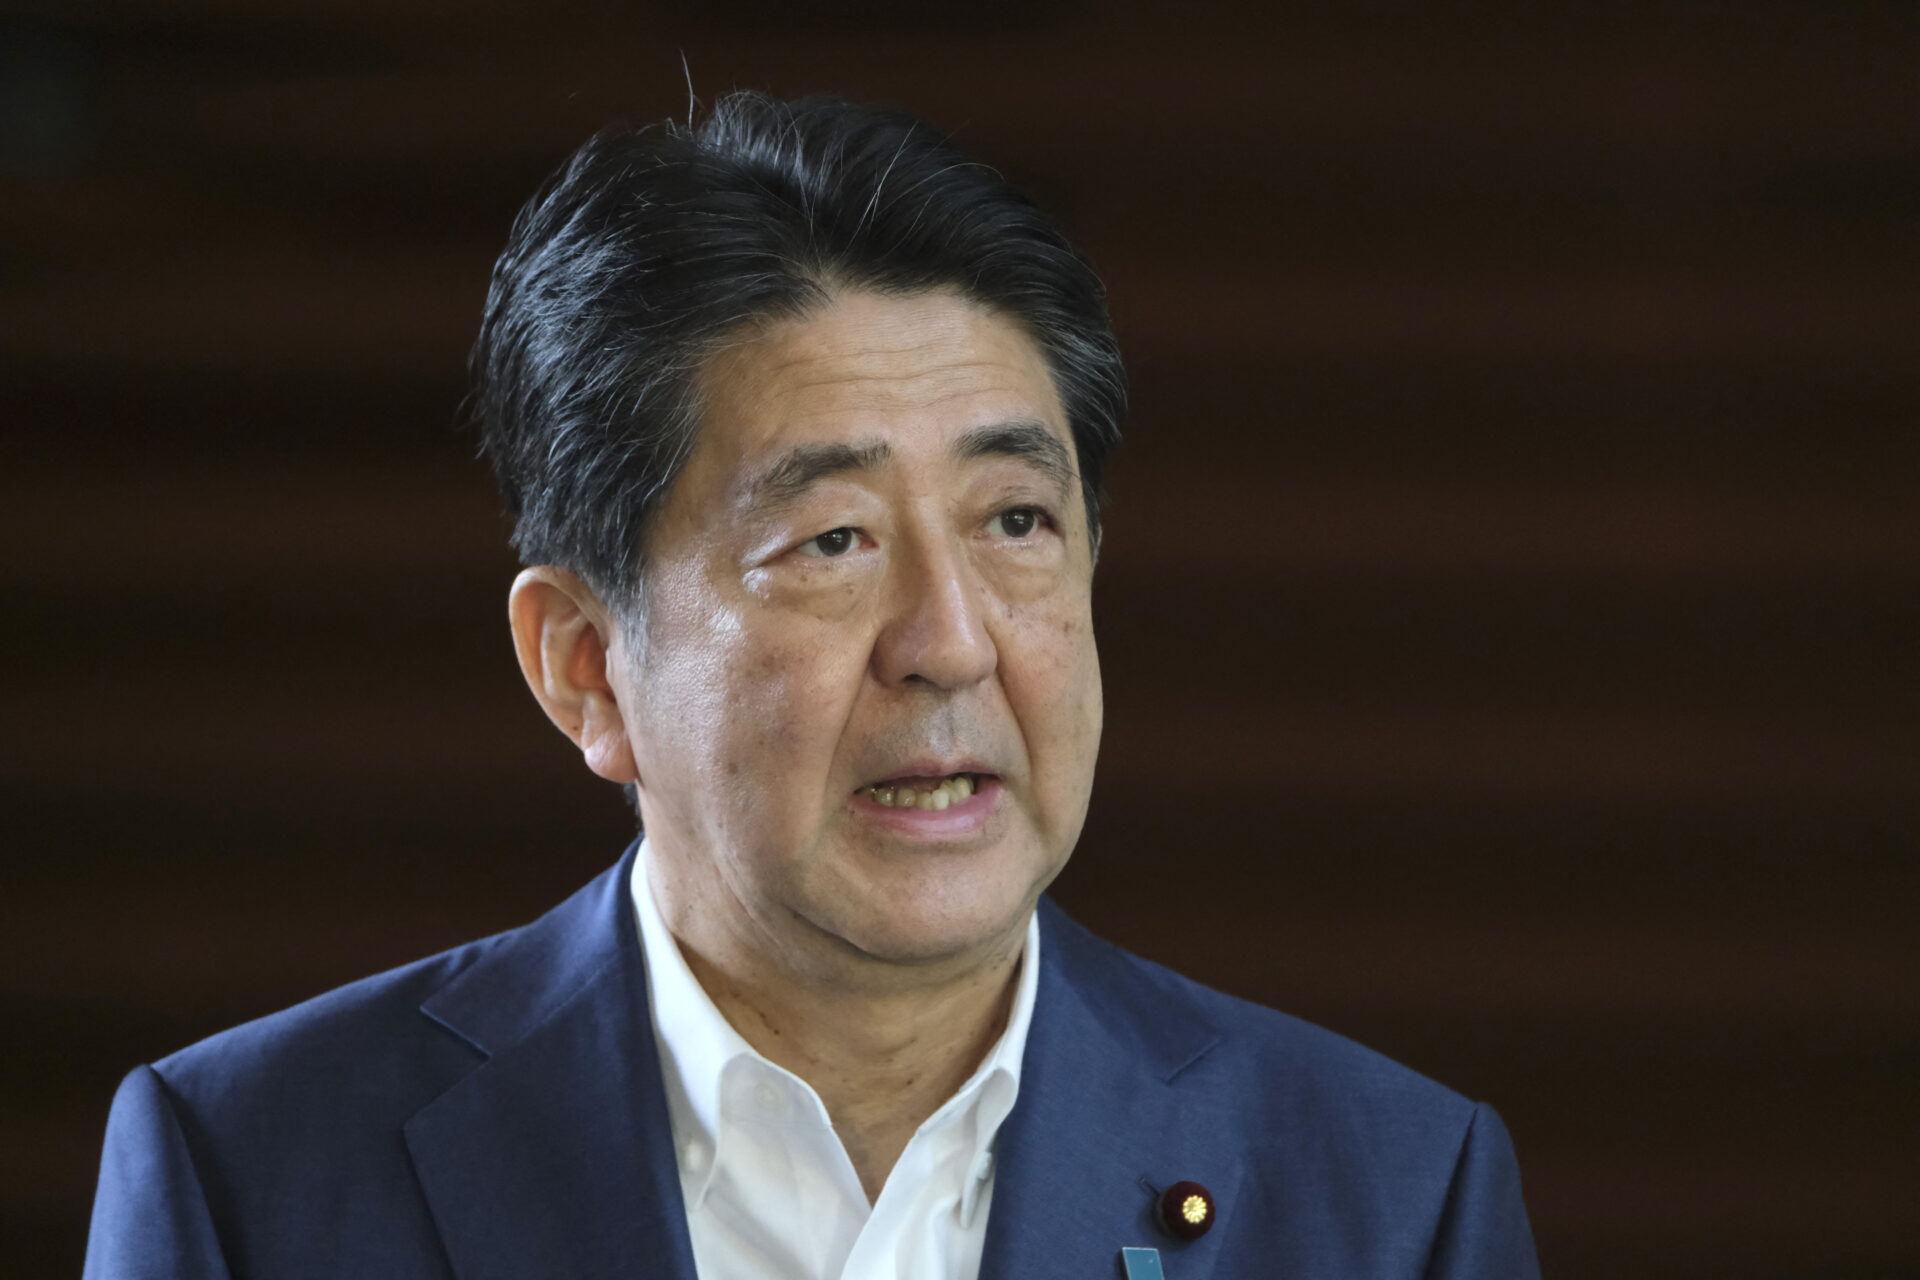 Balean a Shinzo Abe, exprimer ministro de Japón, en un mitin político